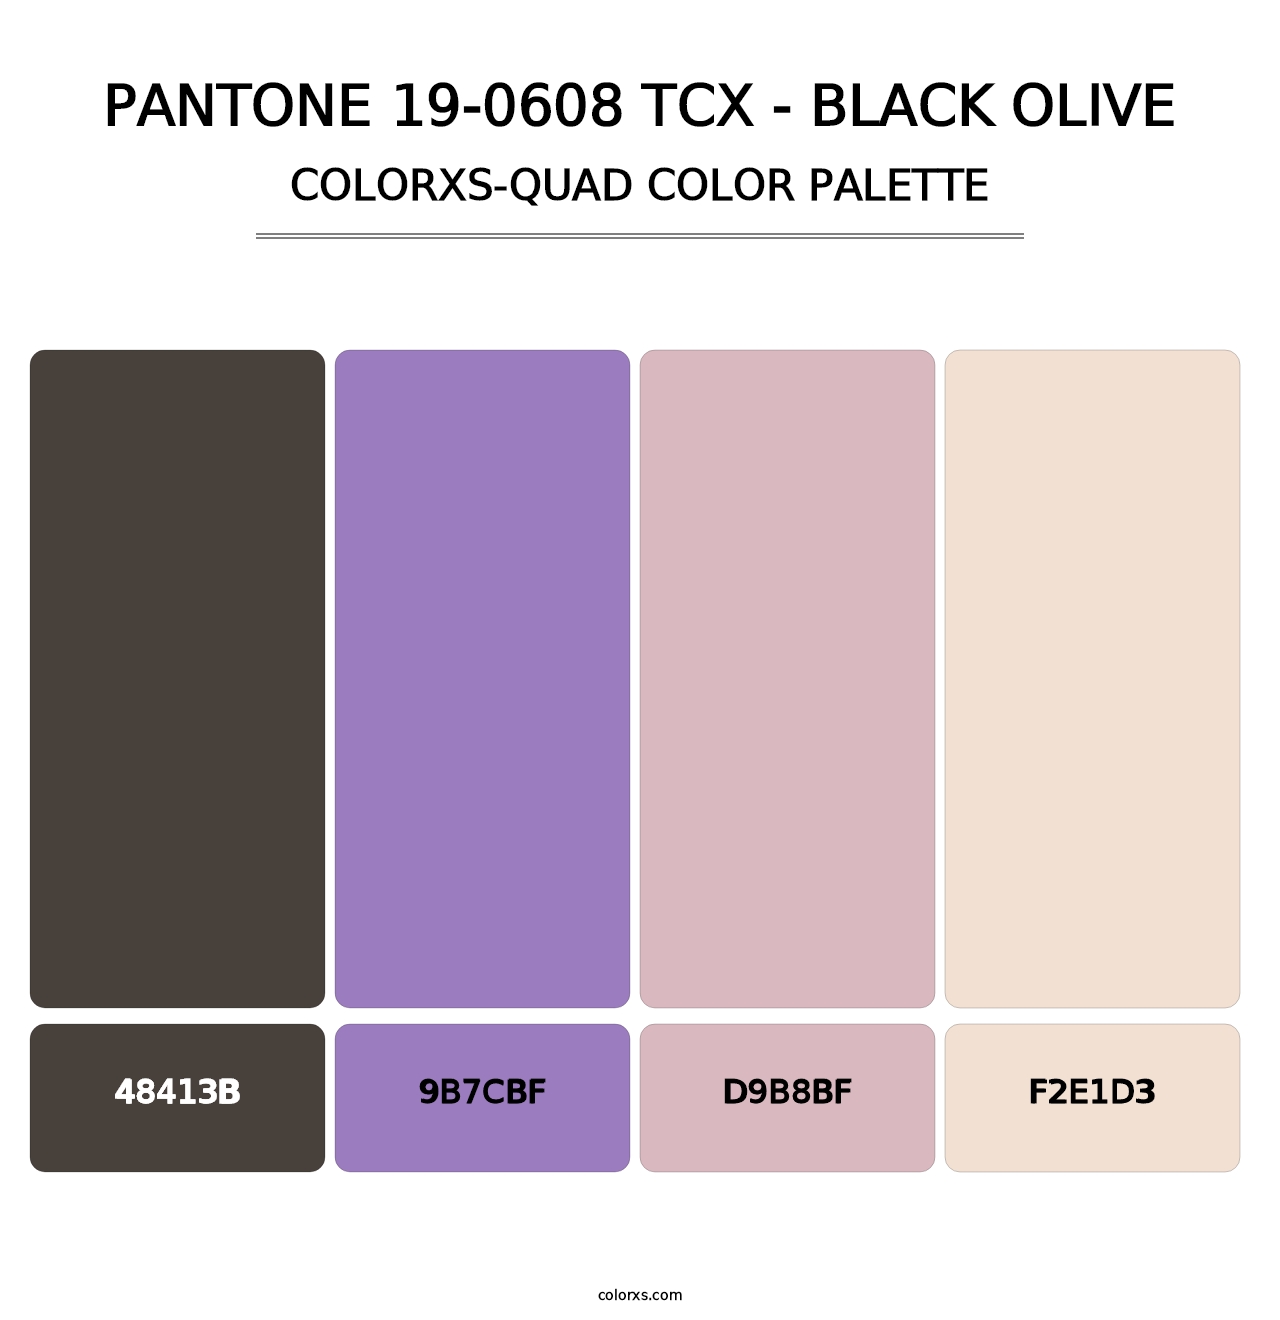 PANTONE 19-0608 TCX - Black Olive - Colorxs Quad Palette